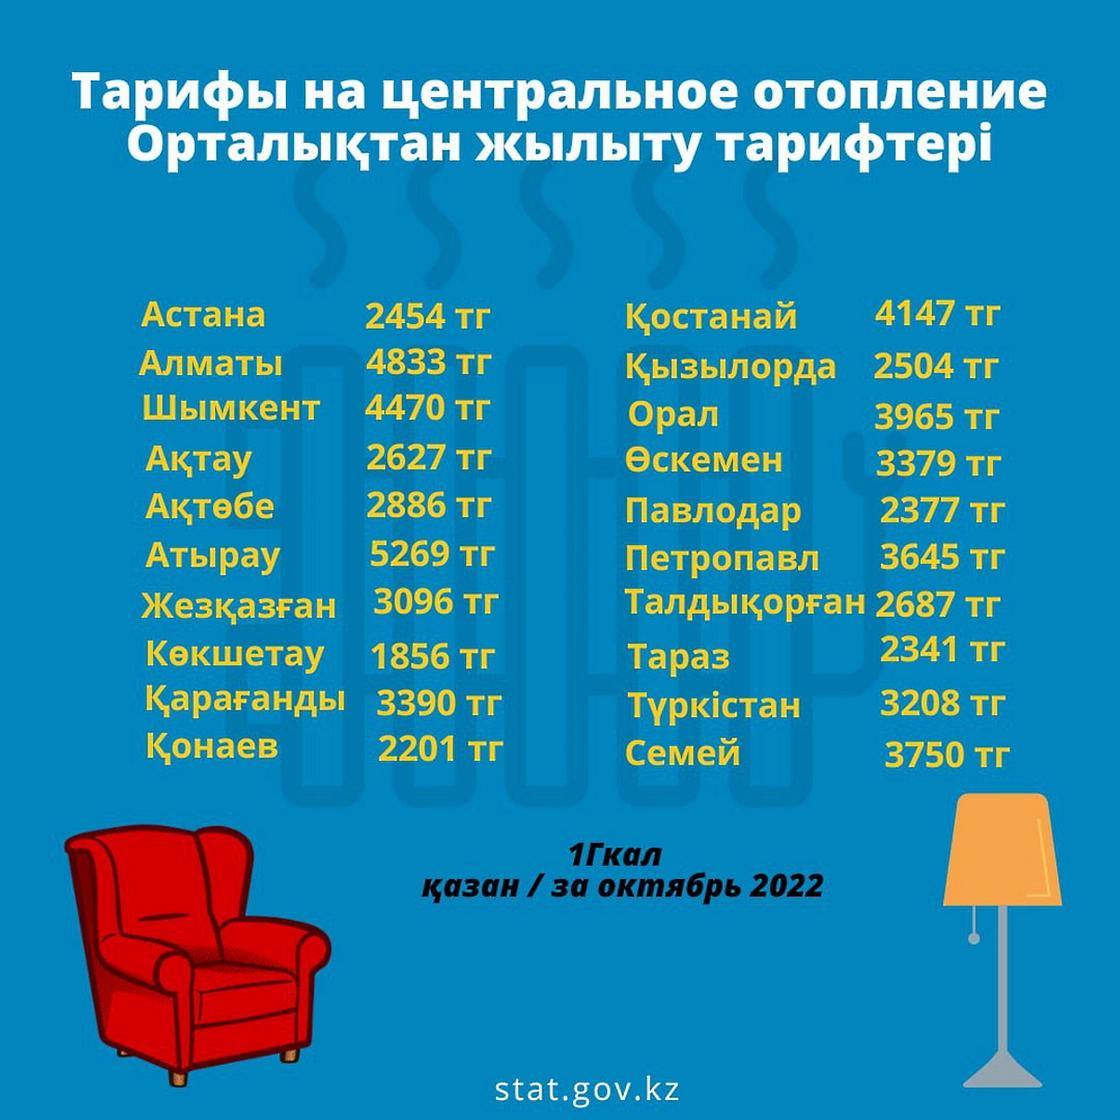 Тарифы на центральное отопление в Казахстане.